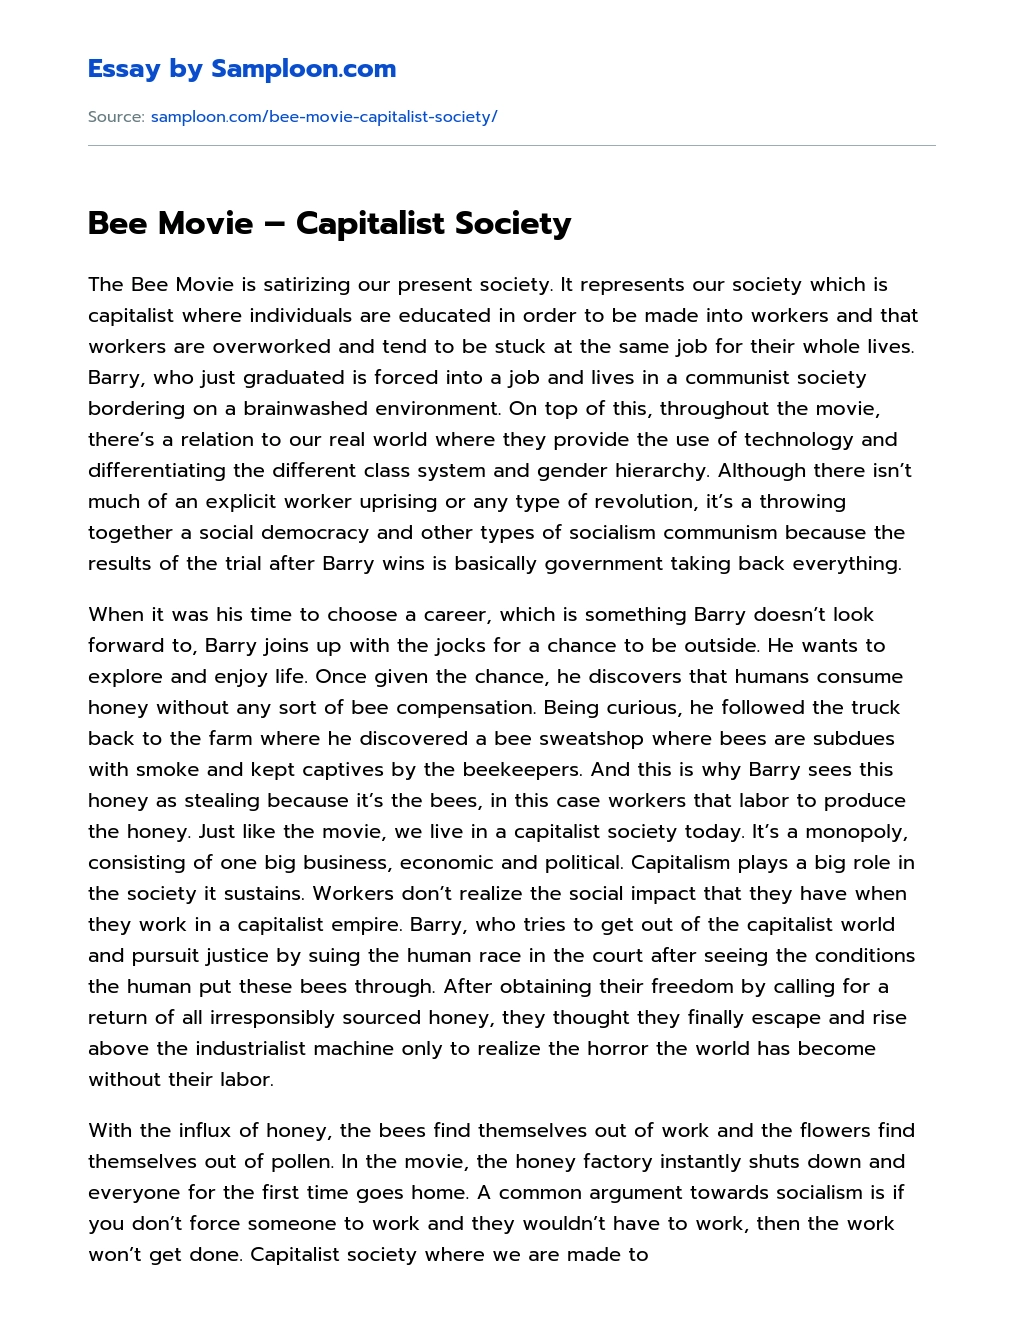 Bee Movie – Capitalist Society essay